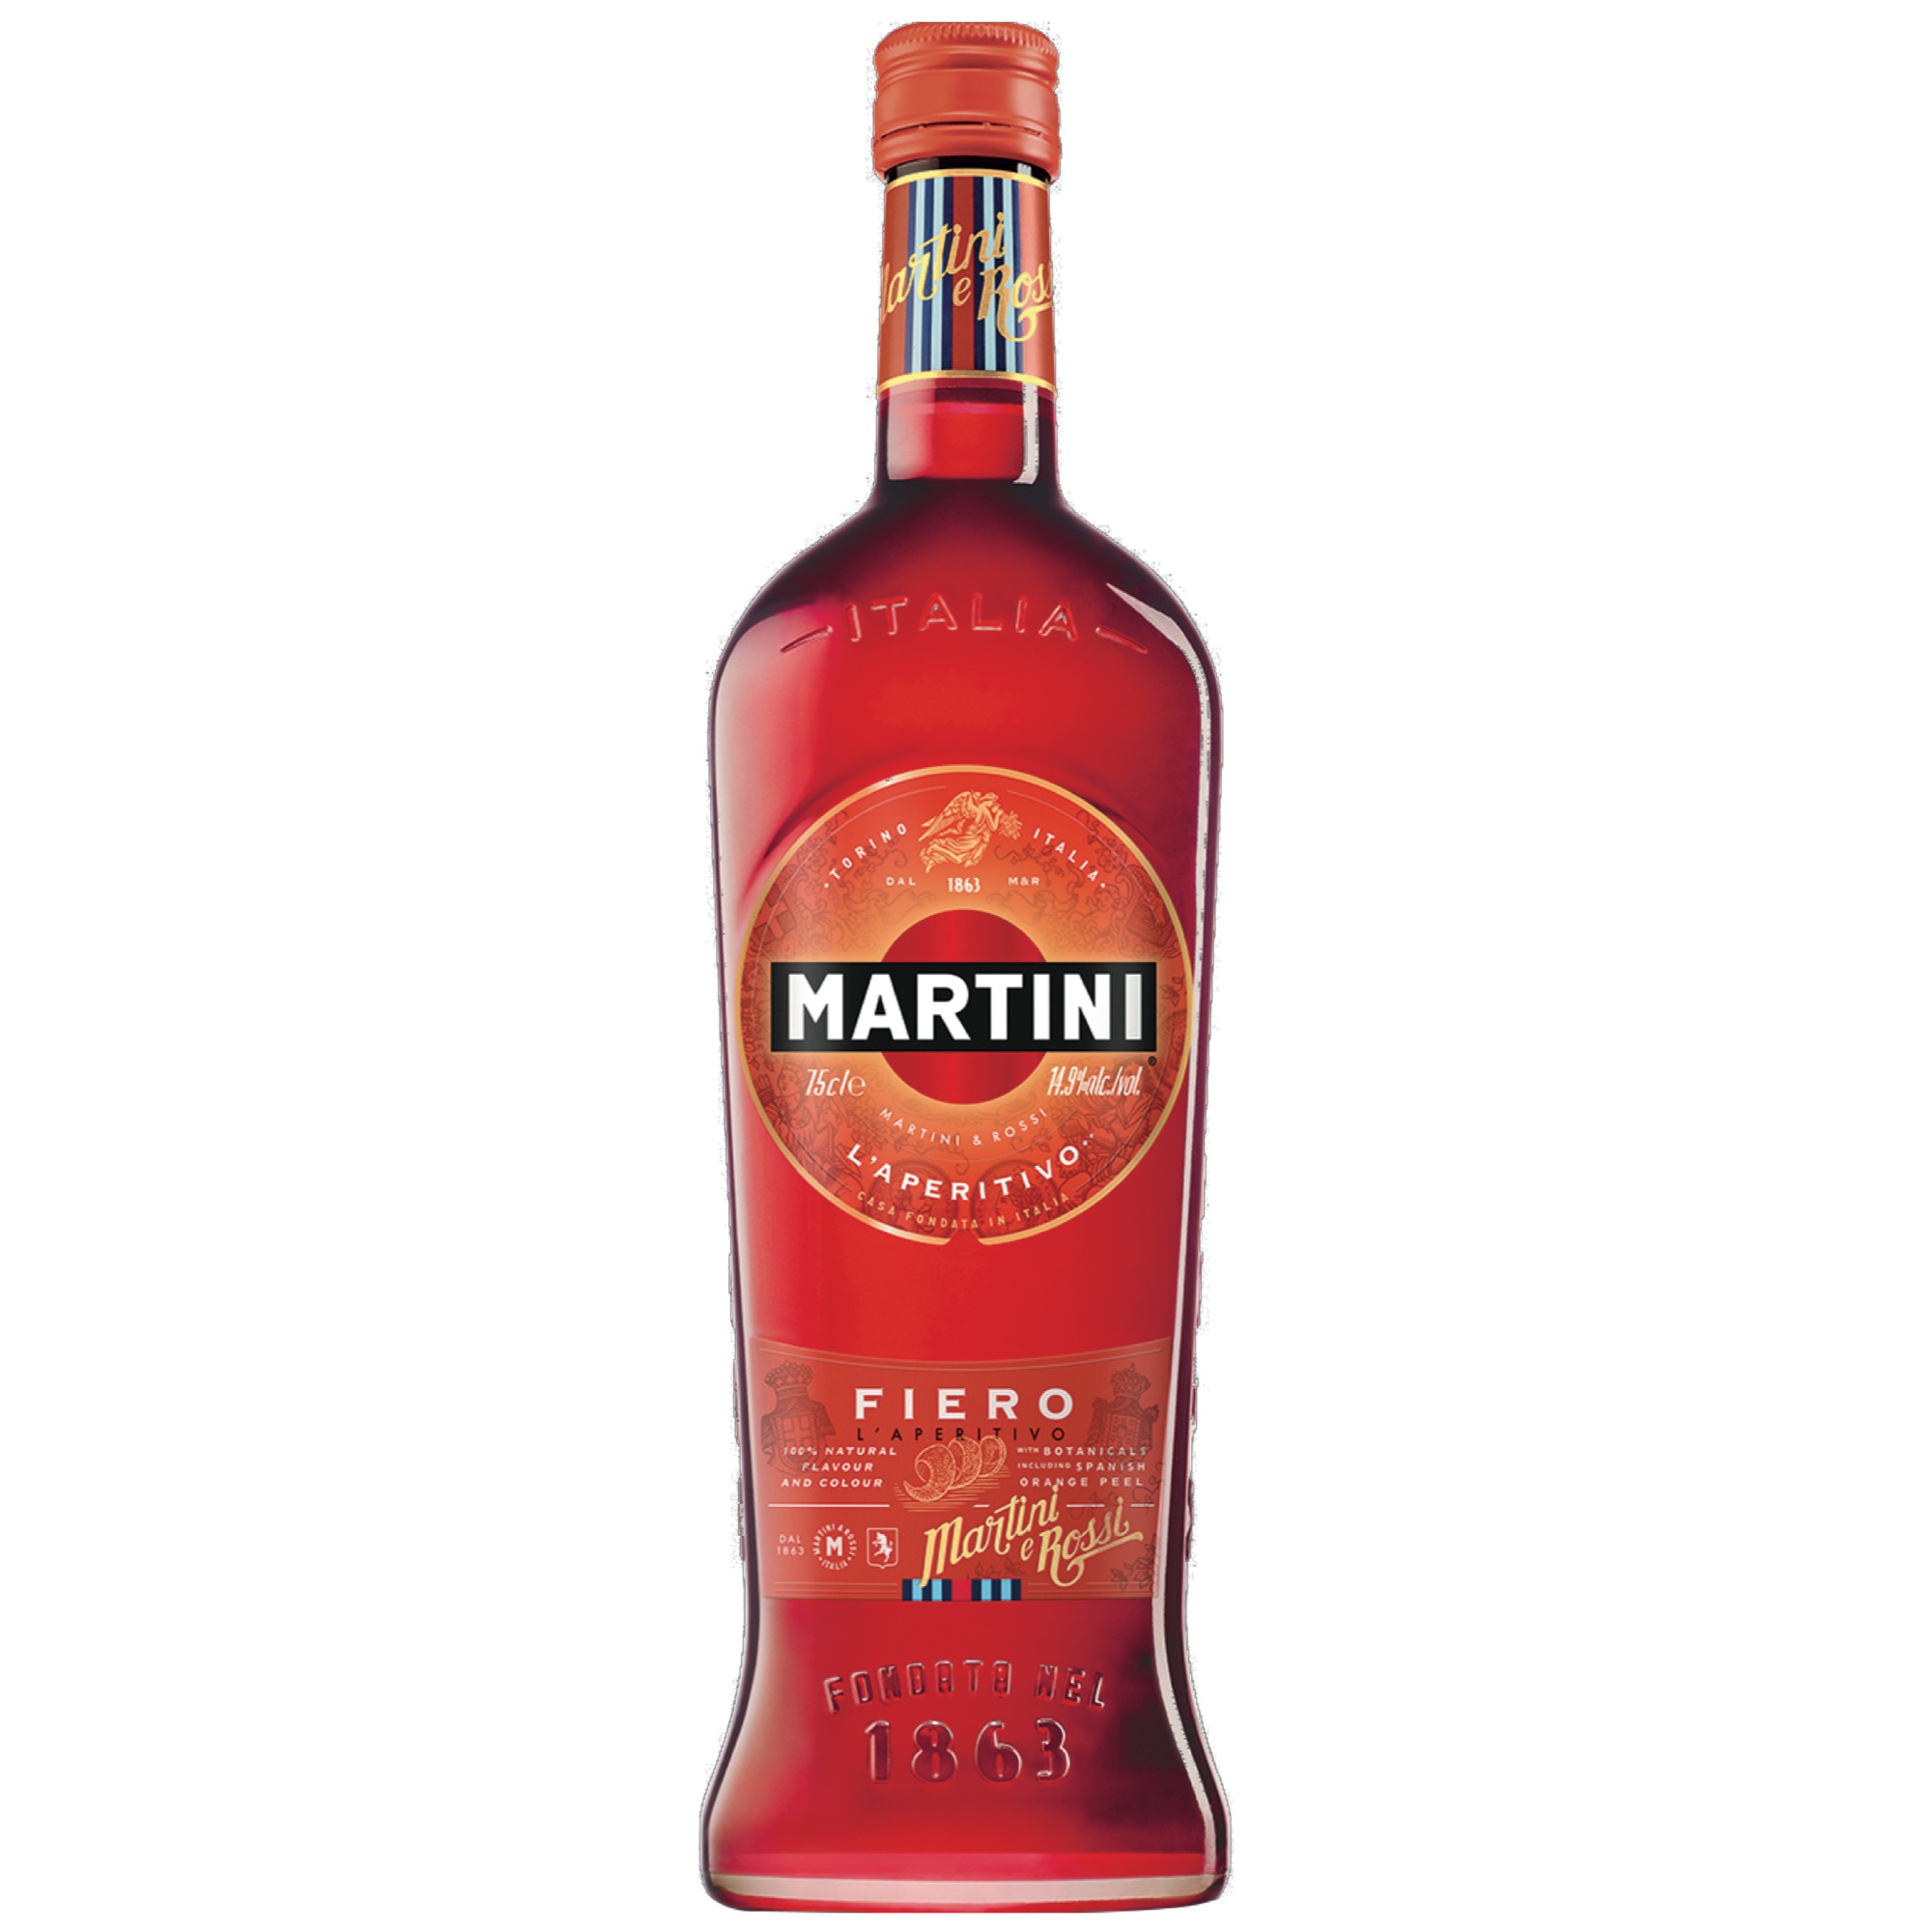 Martini 0,75l, Fiero